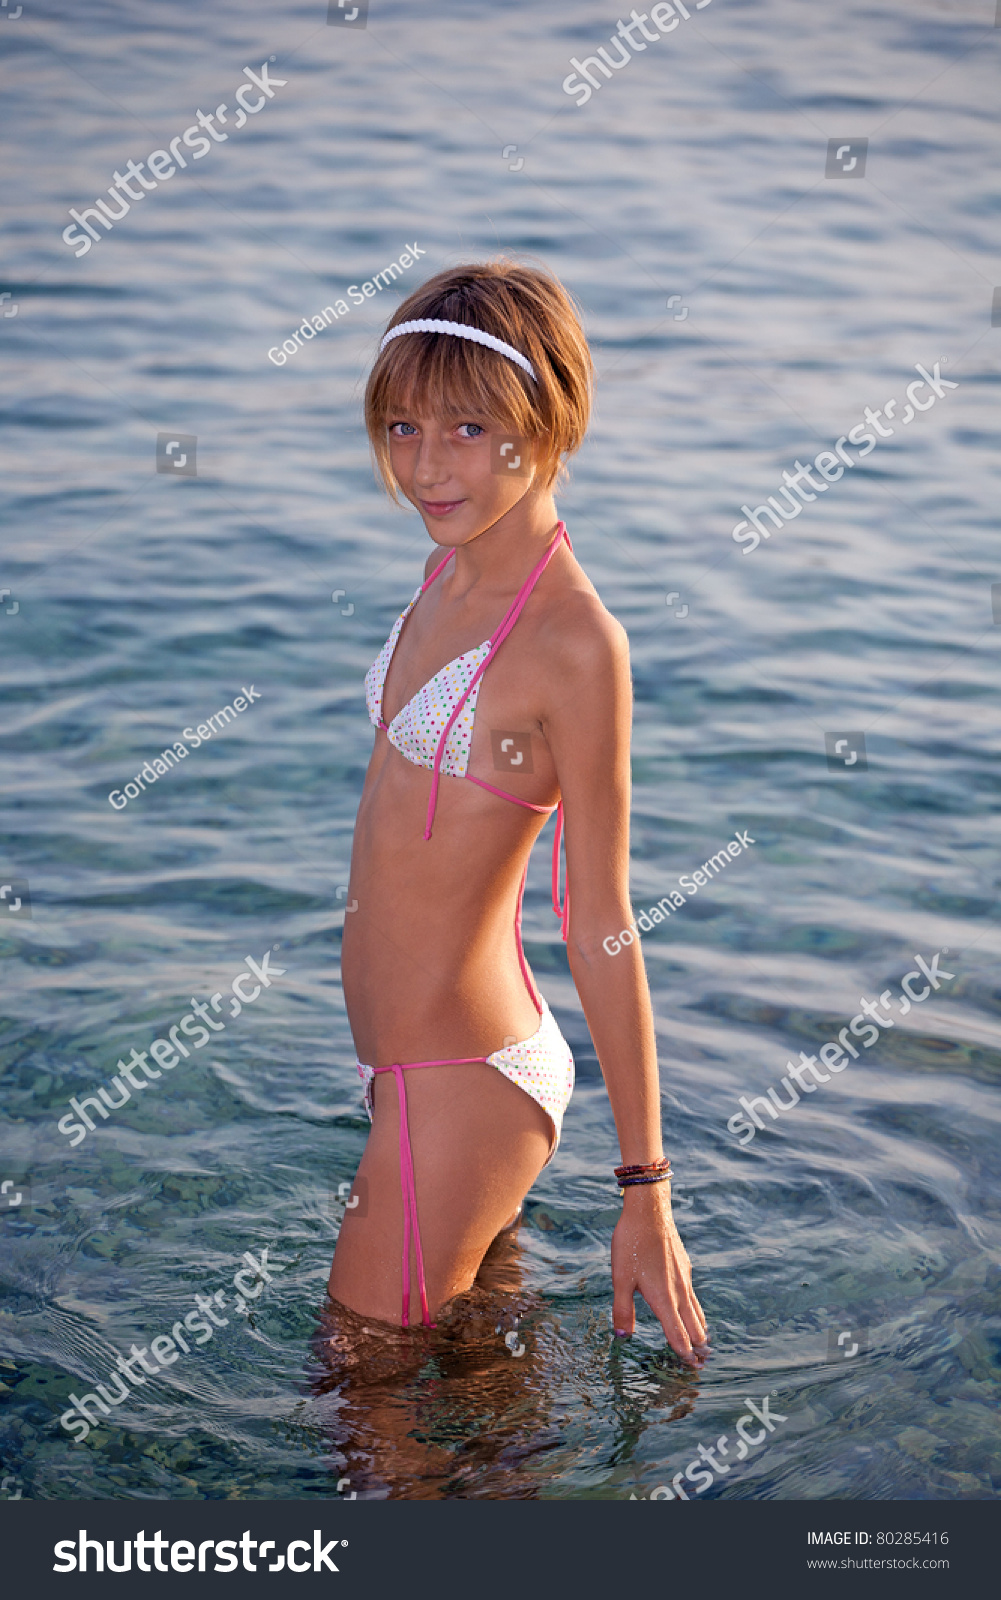 Bikini teenager